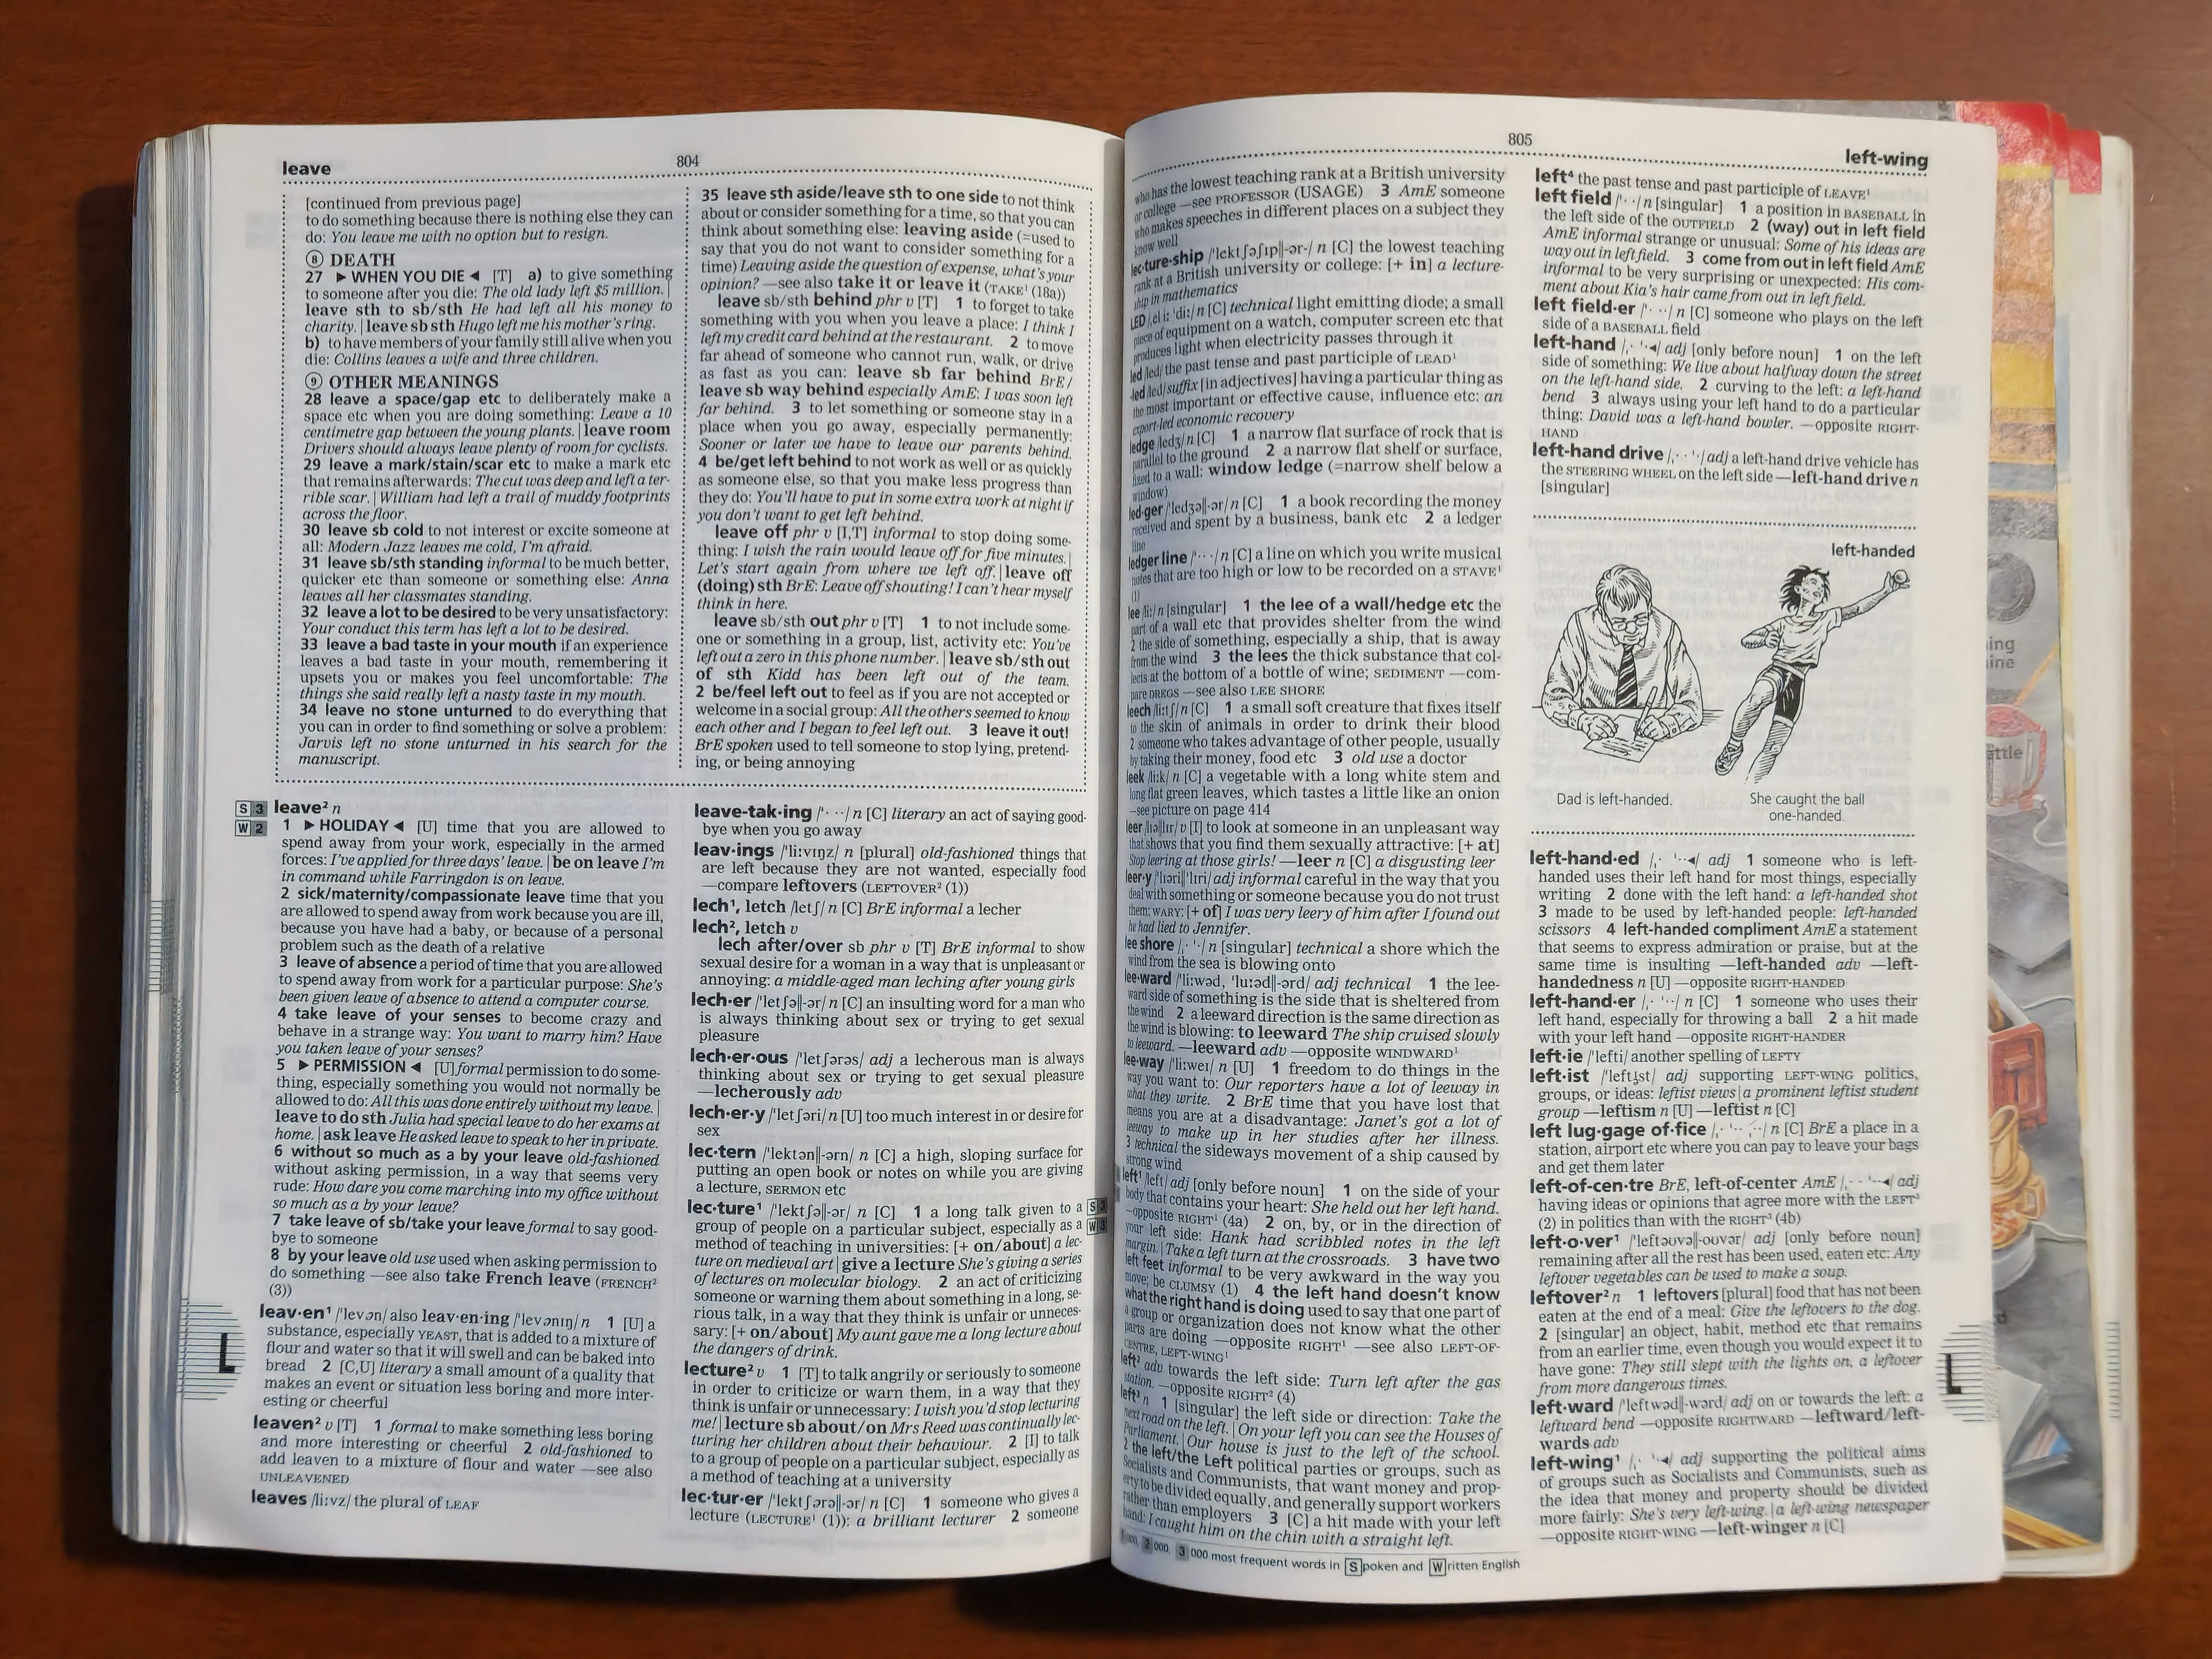 Dicionário Completo e Ilustrado - Inglês (Longman)